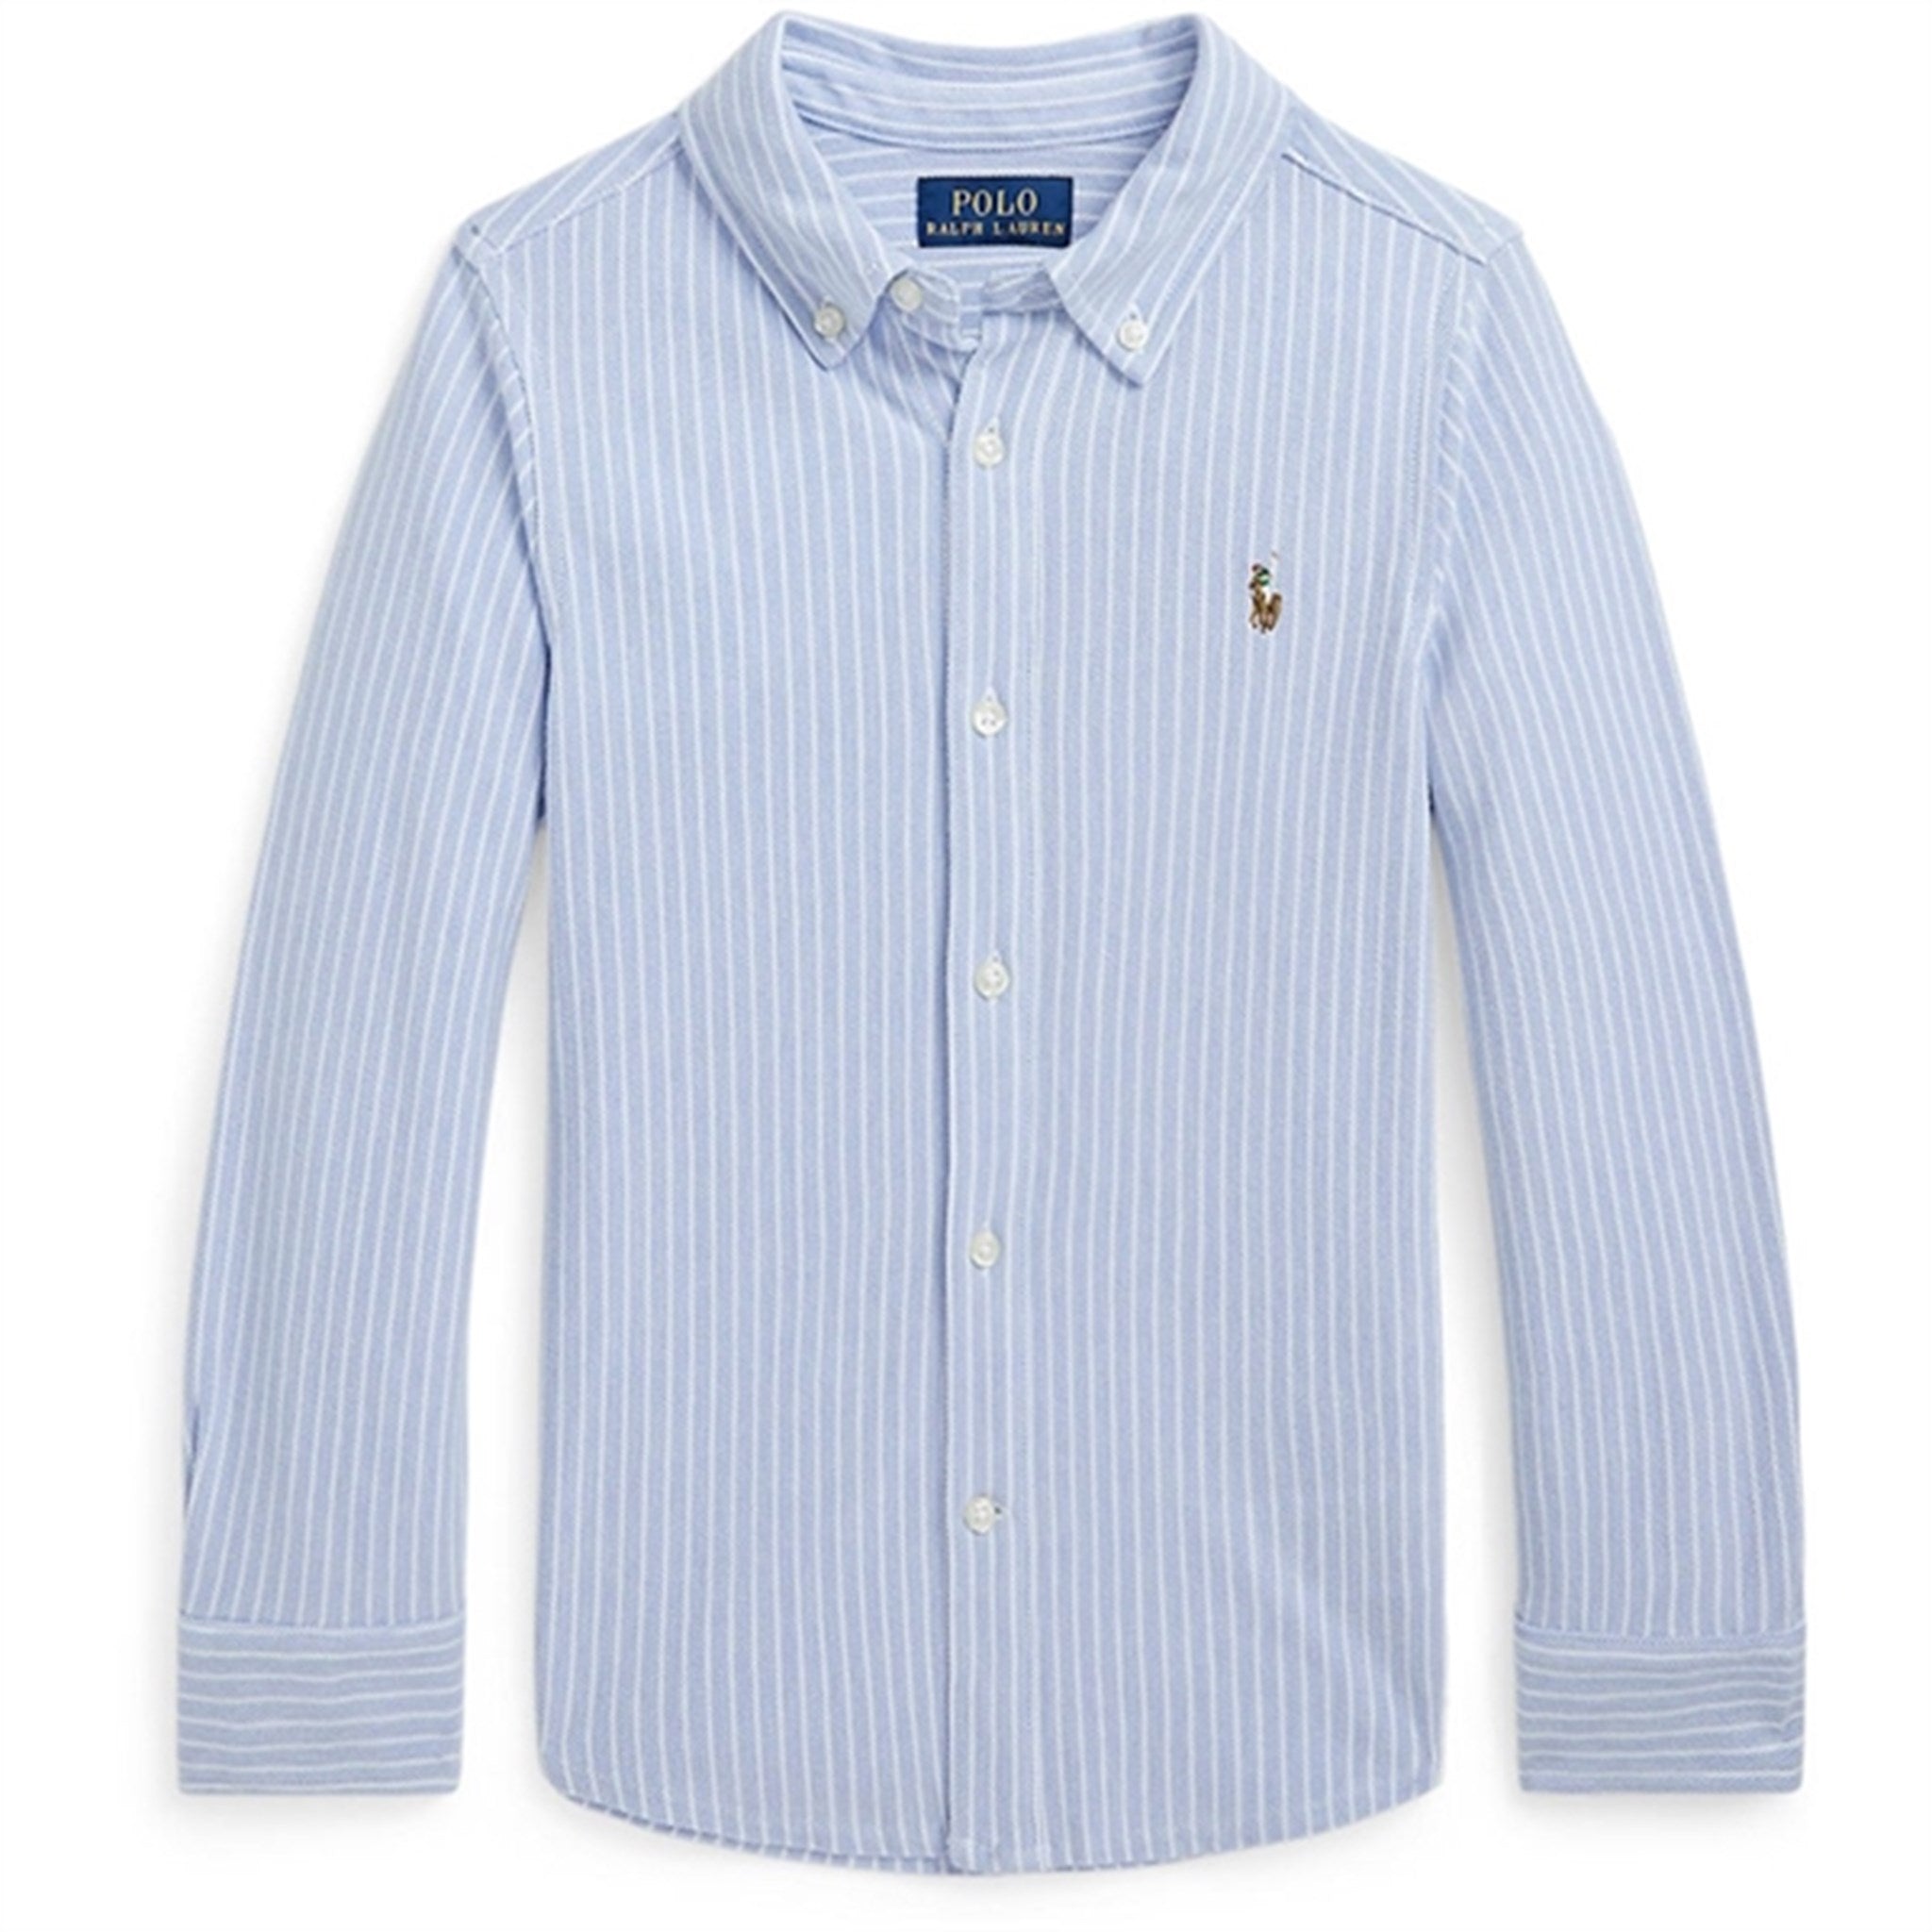 Polo Ralph Lauren Boy Sport Shirt Blue/White